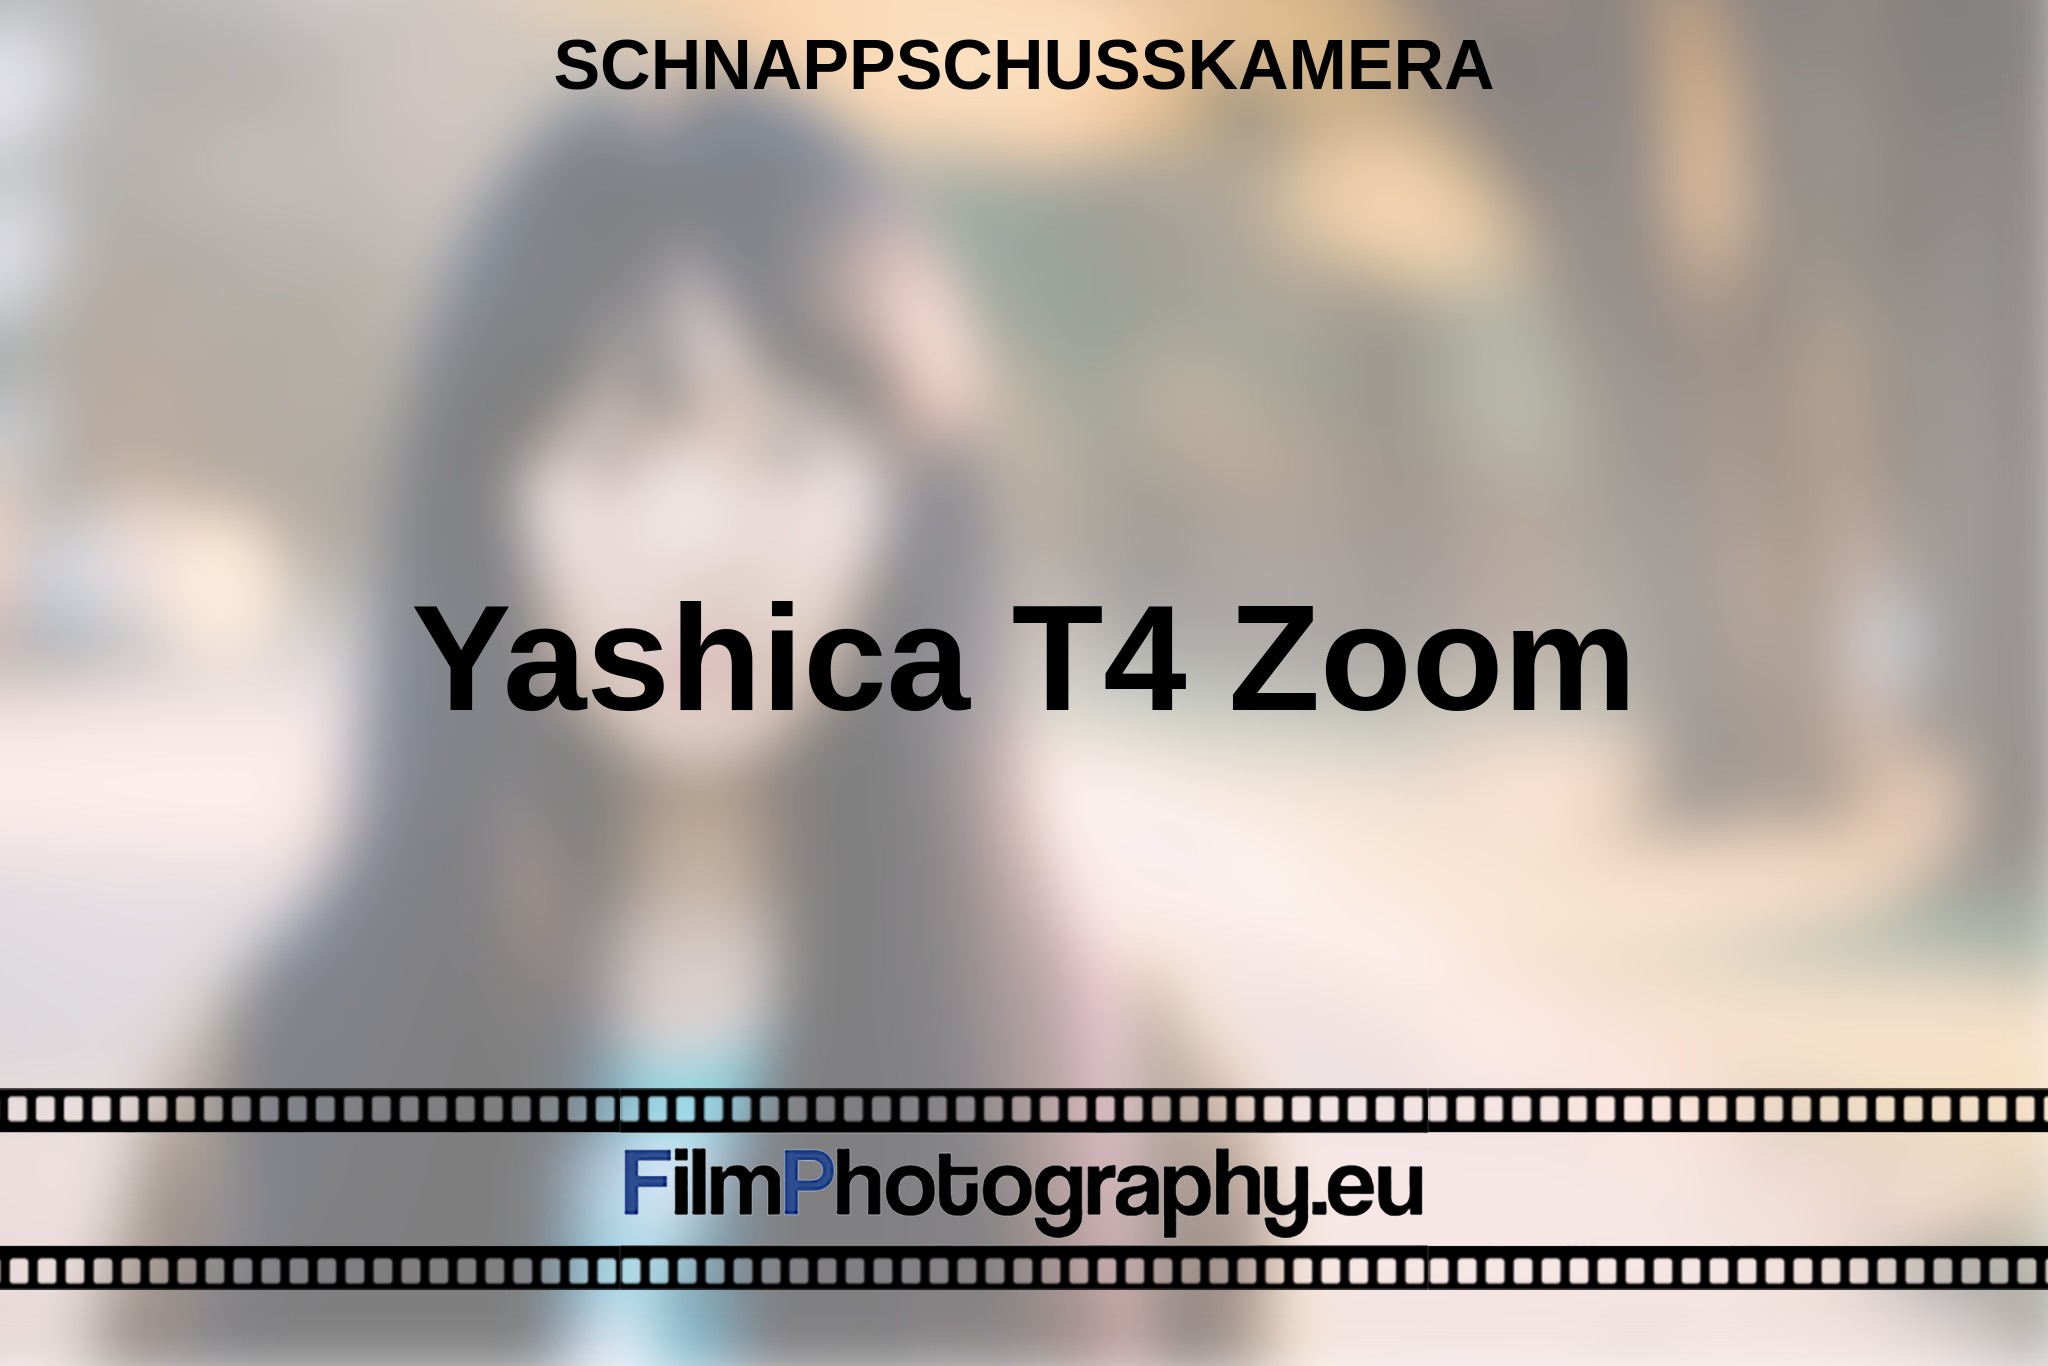 yashica-t4-zoom-schnappschusskamera-bnv.jpg